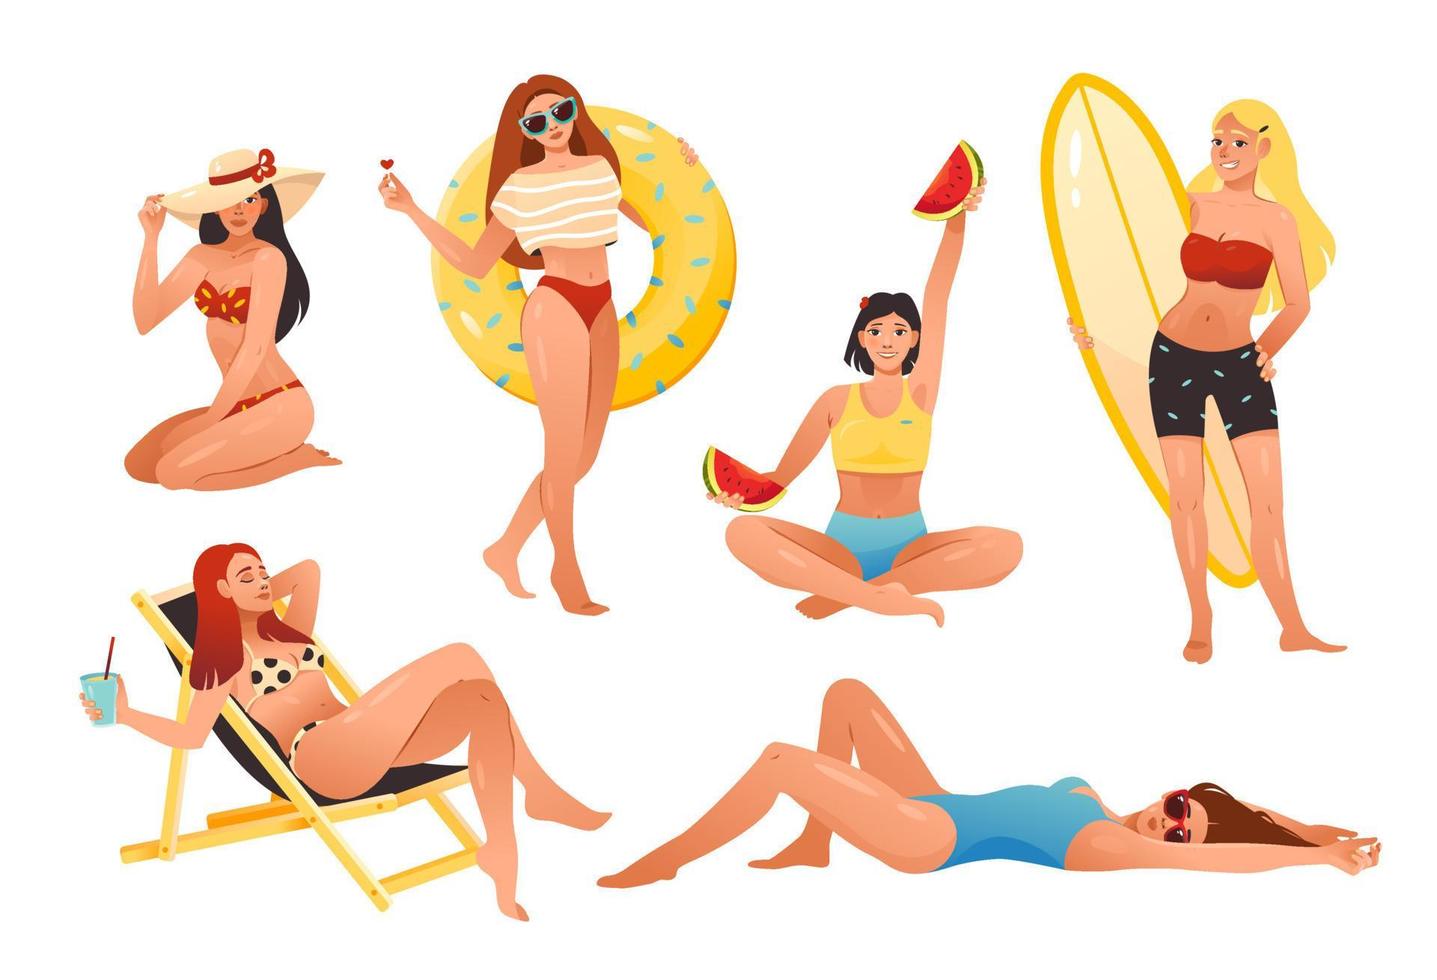 unga tjejer är engagerade i sommarlov på stranden - solar, går med surfbrädor, simmar med en uppblåsbar cirkel, äter frukt. seriefigurer isolerad på en vit bakgrund vektor